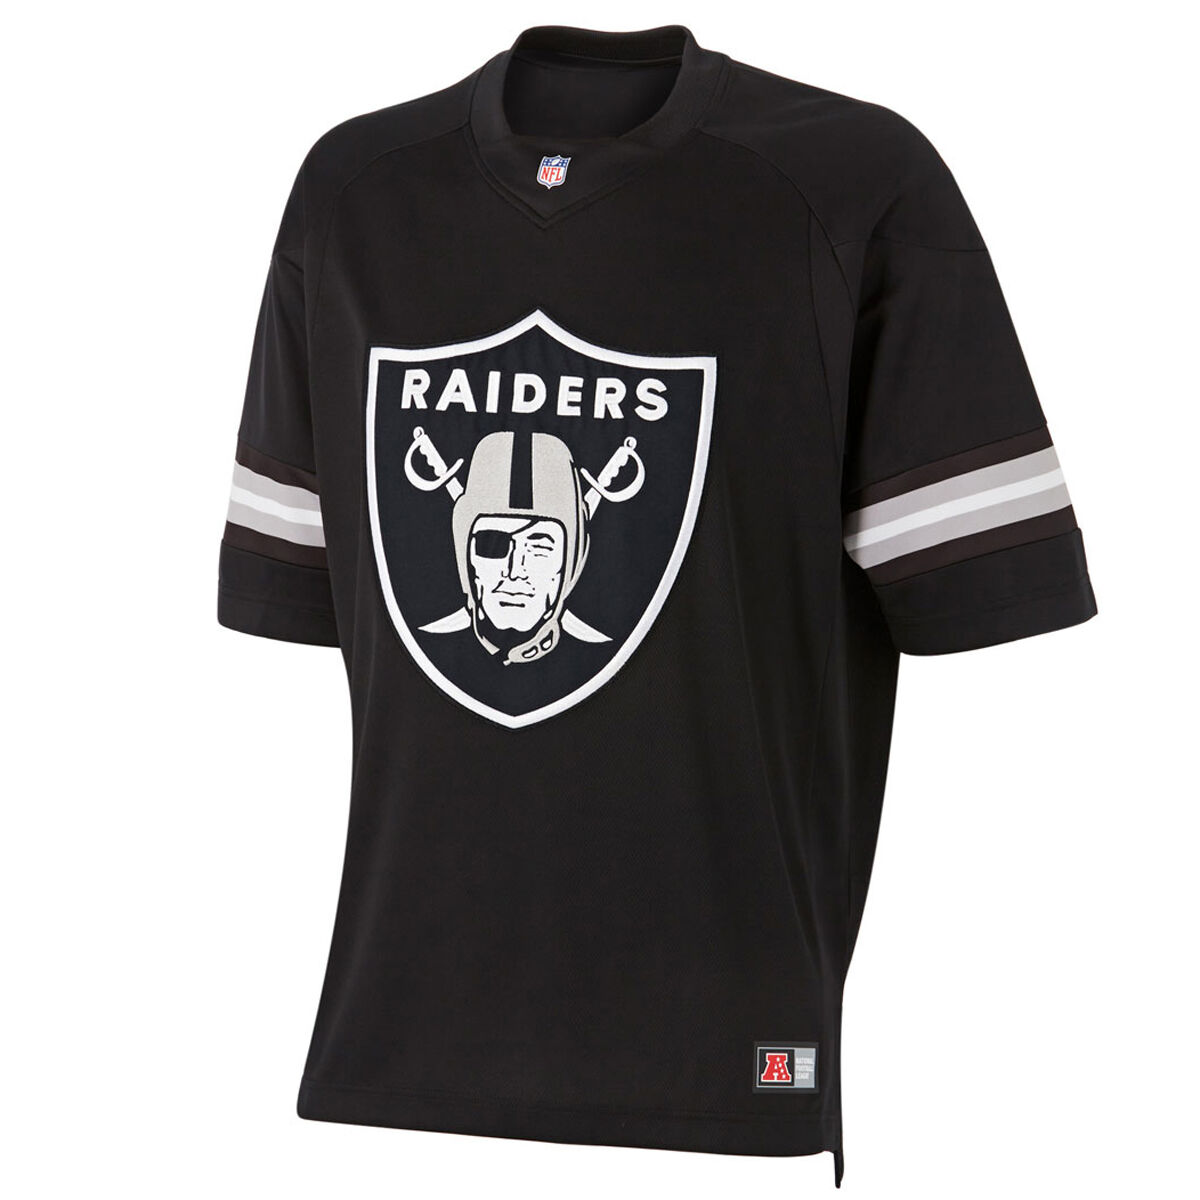 Oakland Raiders Jerseys & Teamwear | NFL Merchandise | rebel